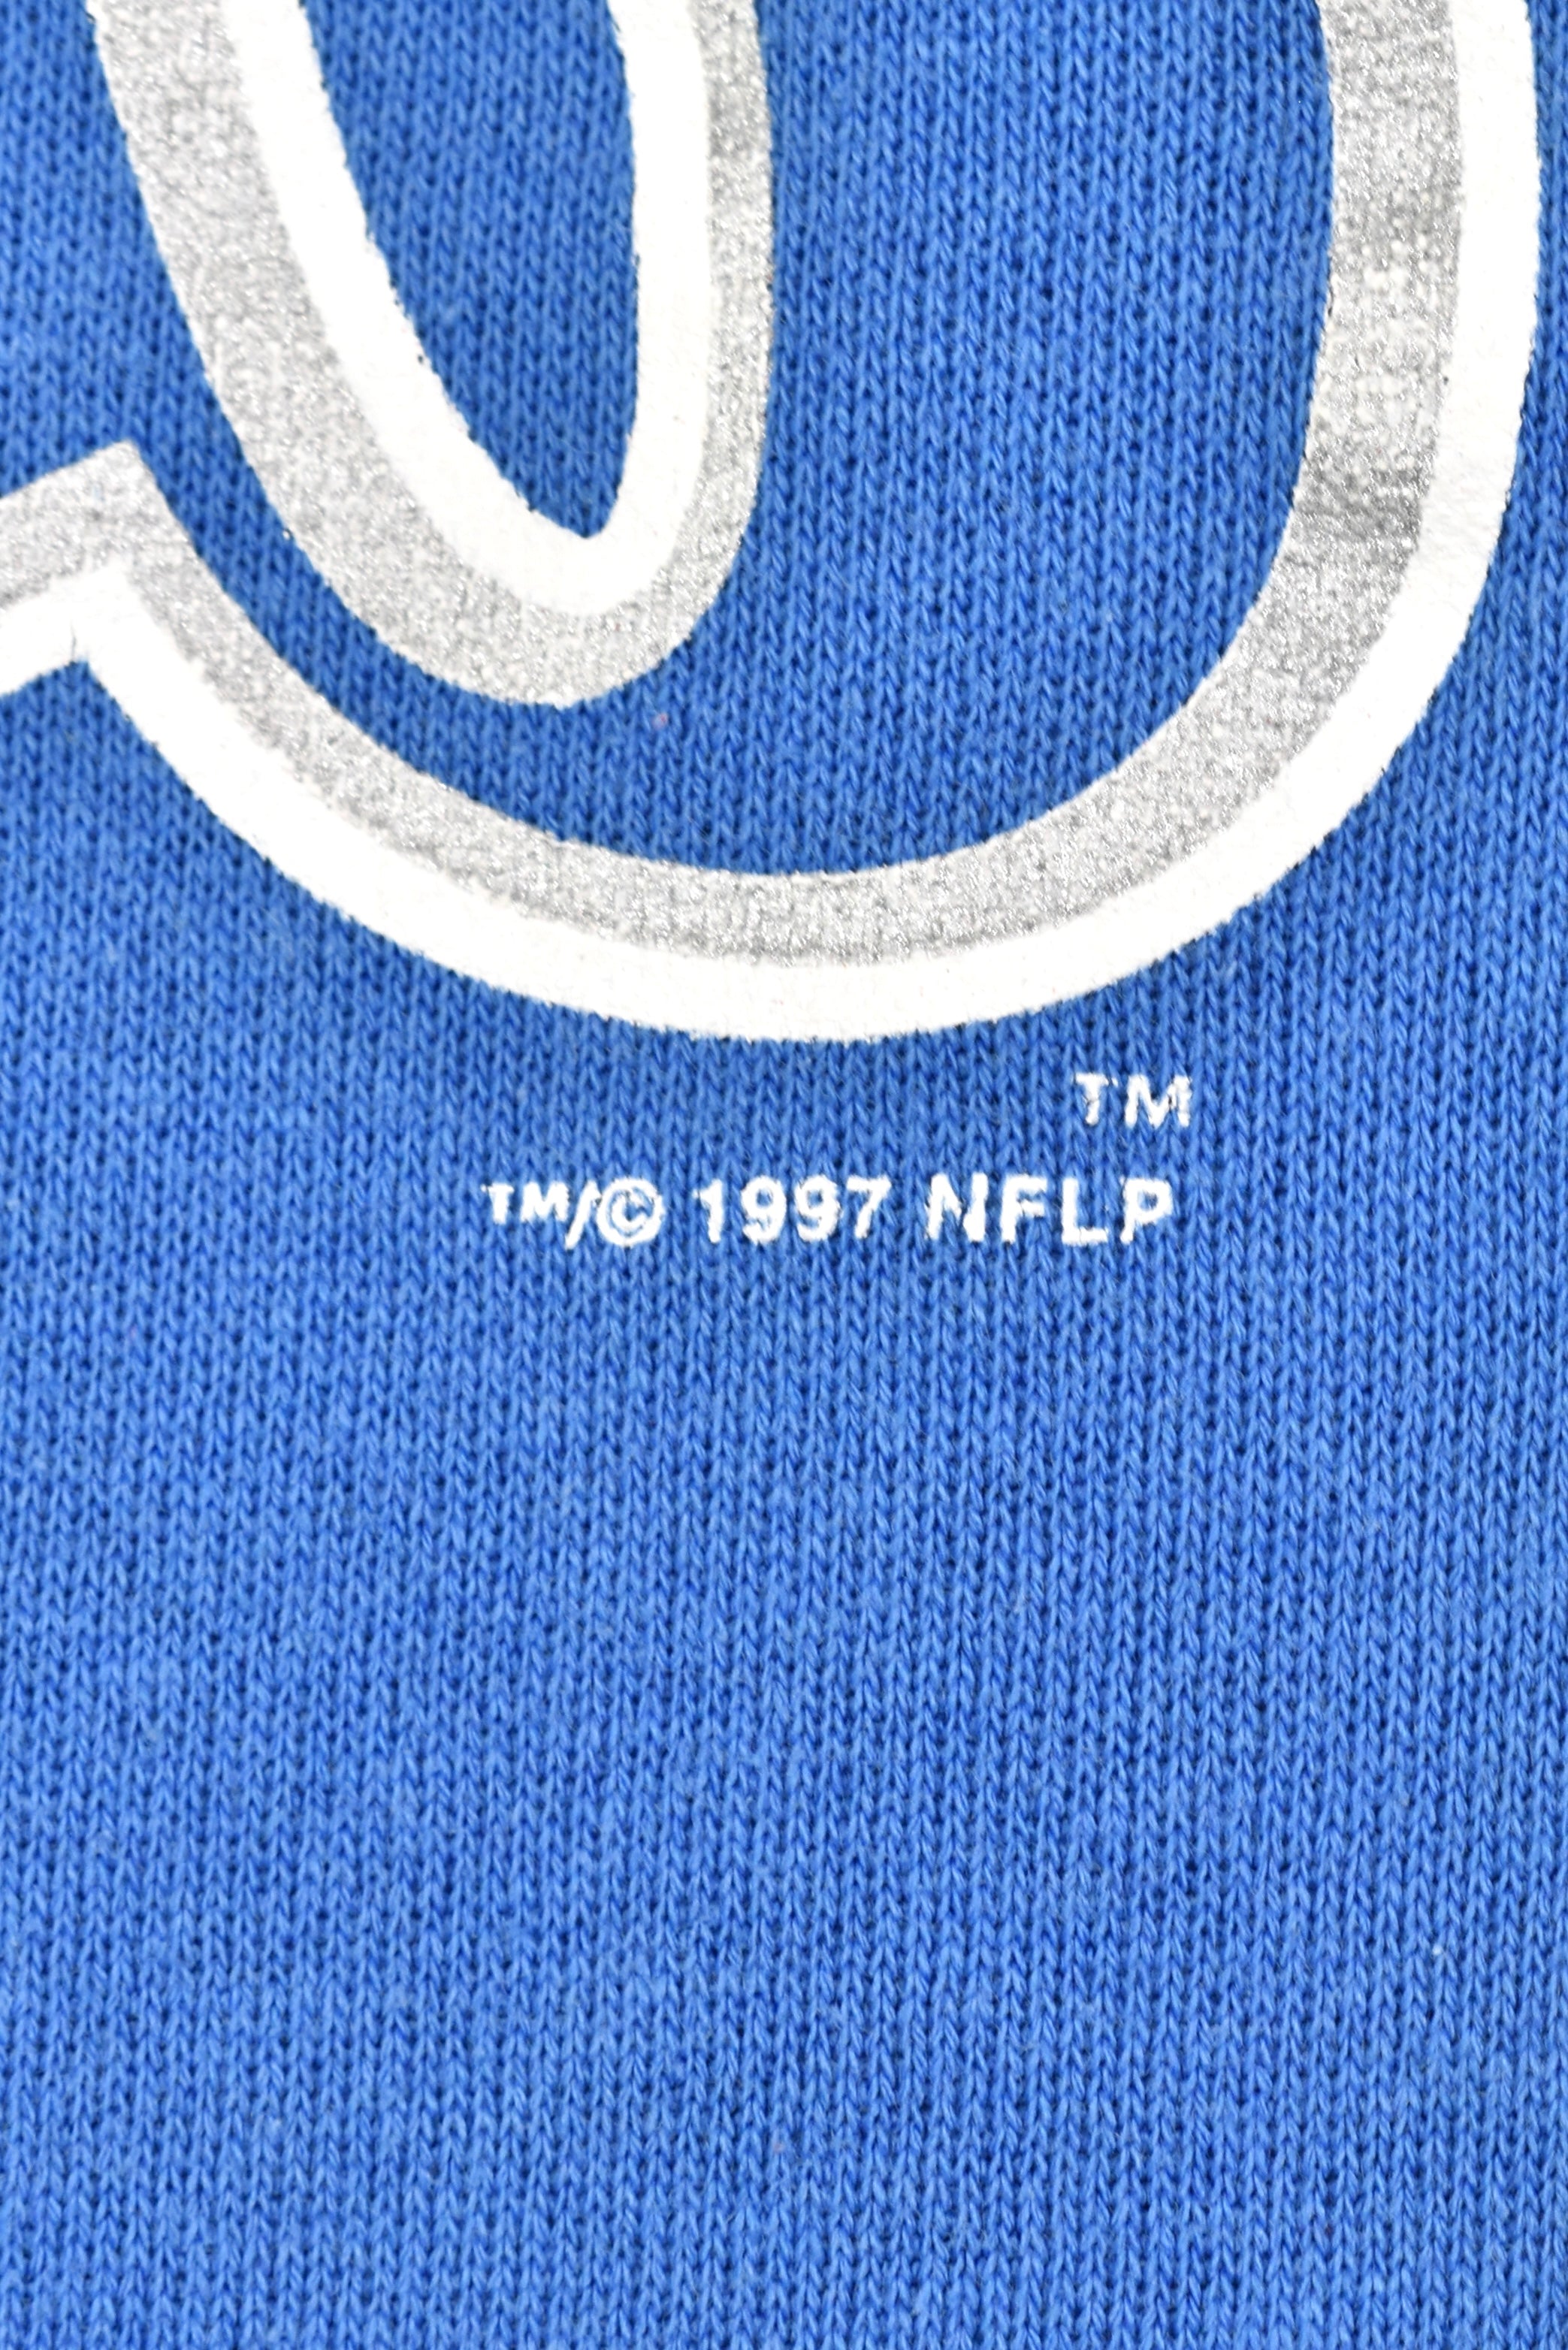 Vintage 1997 NFL Detroit Lions blue sweatshirt | Large PRO SPORT